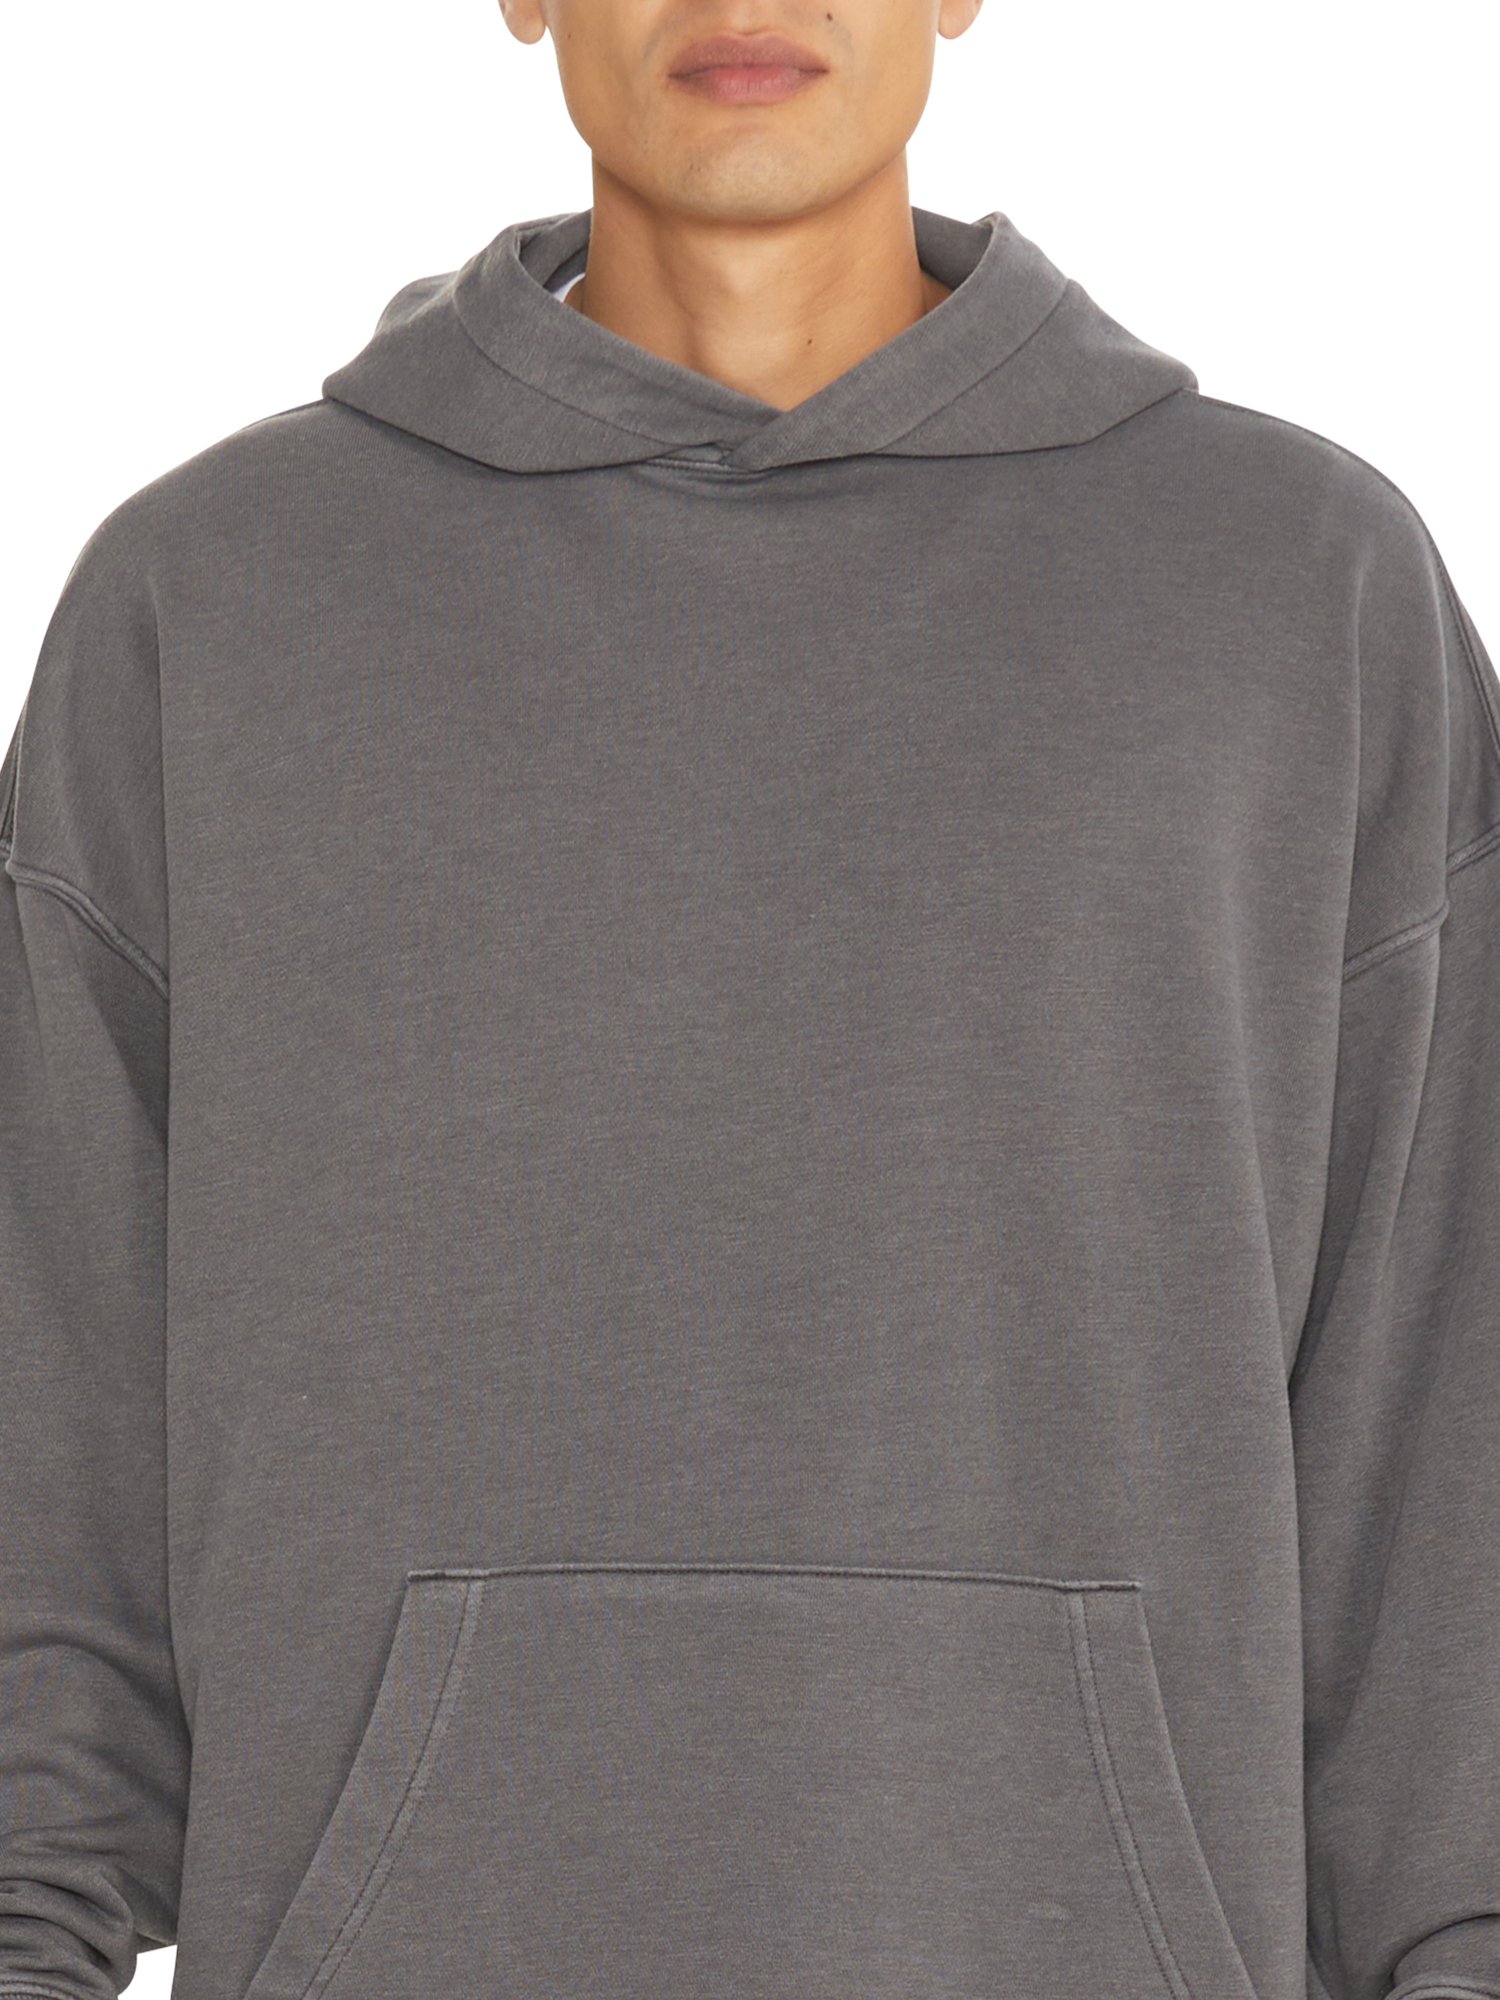 No Boundaries All Gender Fleece Hoodie Sweatshirt, Men's Sizes XS - 5XL - image 5 of 5